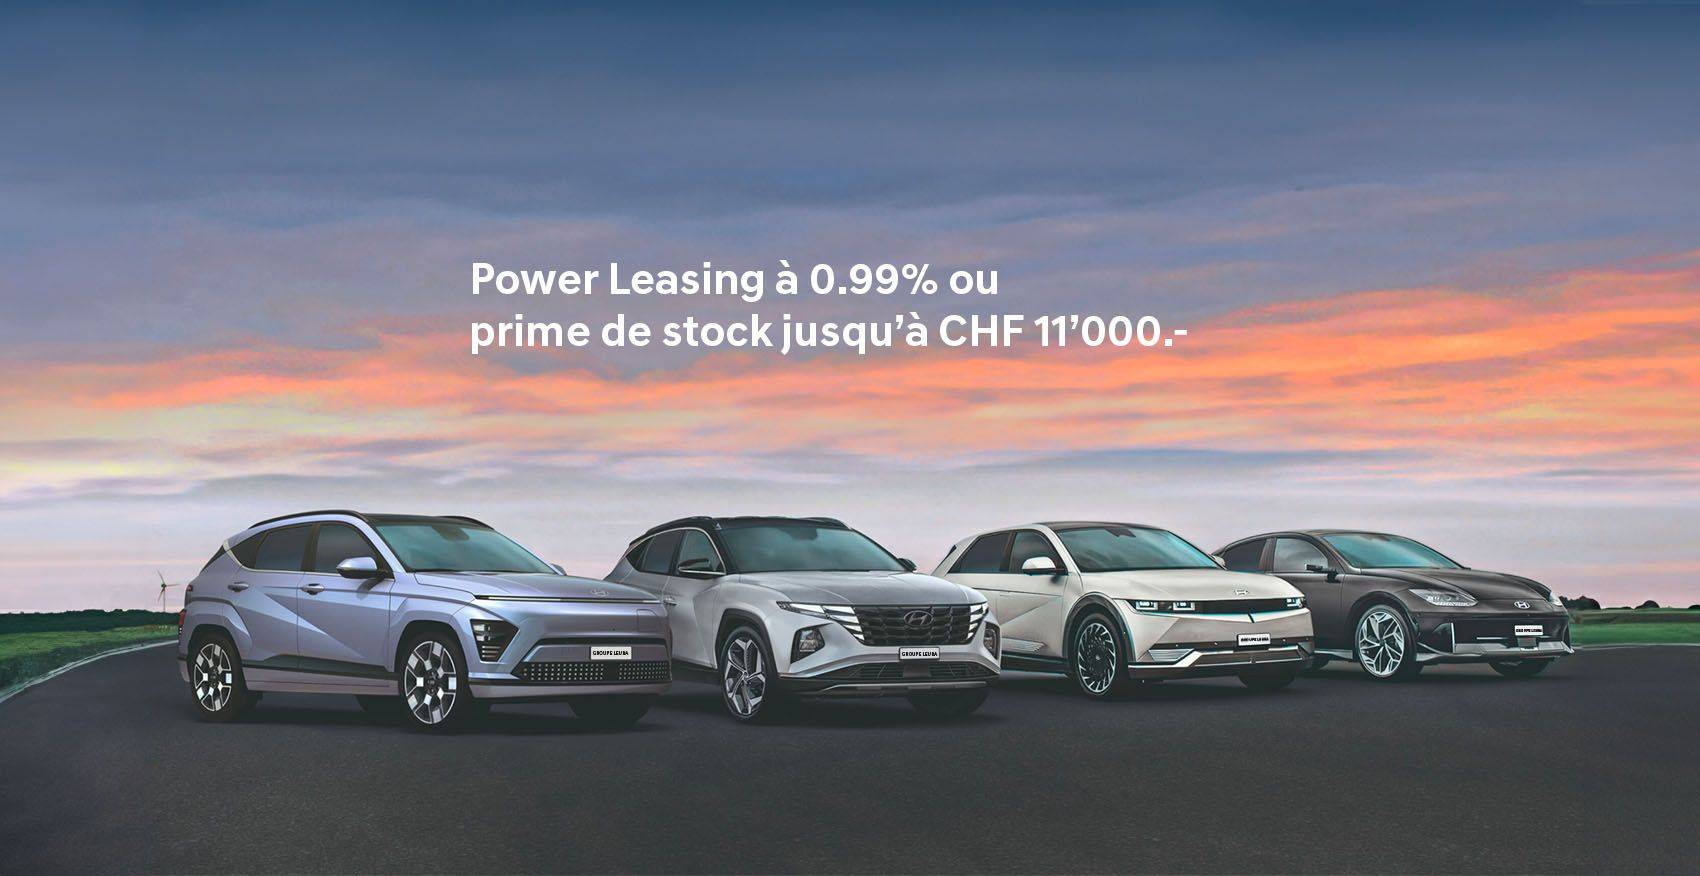 Hyundai Power leasing à 0% sur tous les modèles.